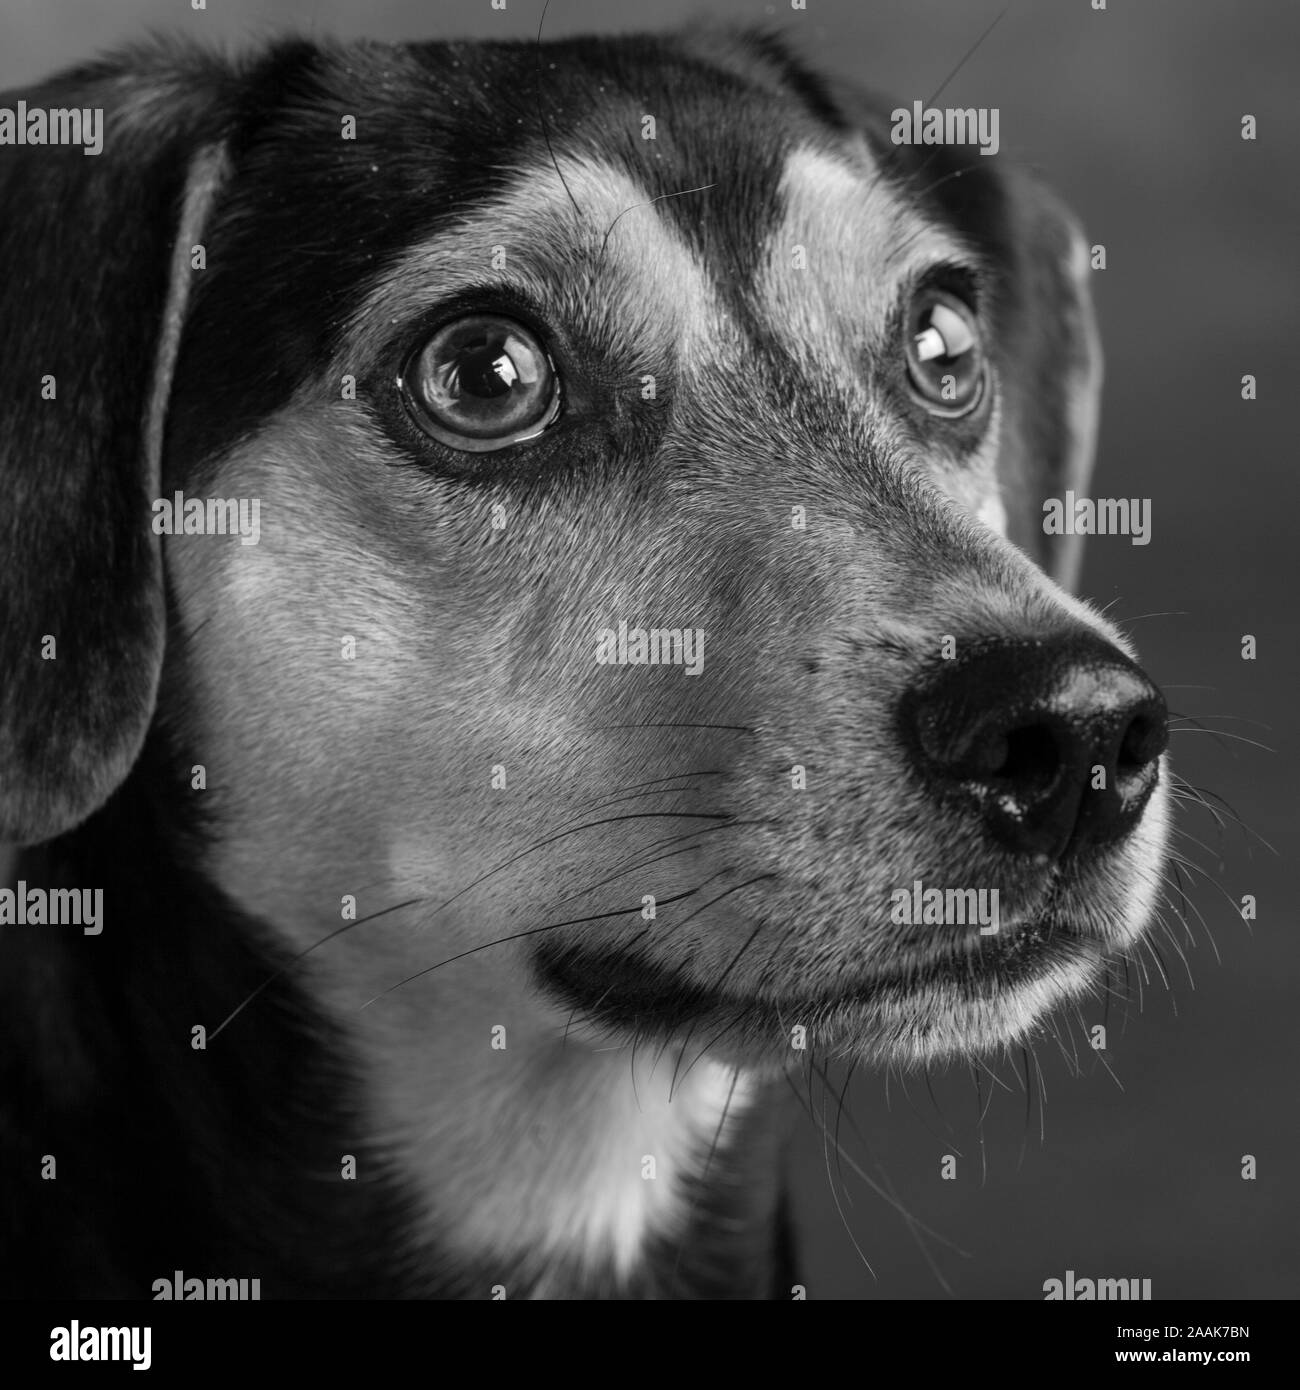 Beagle dog Black and White Stock Photos & Images - Alamy